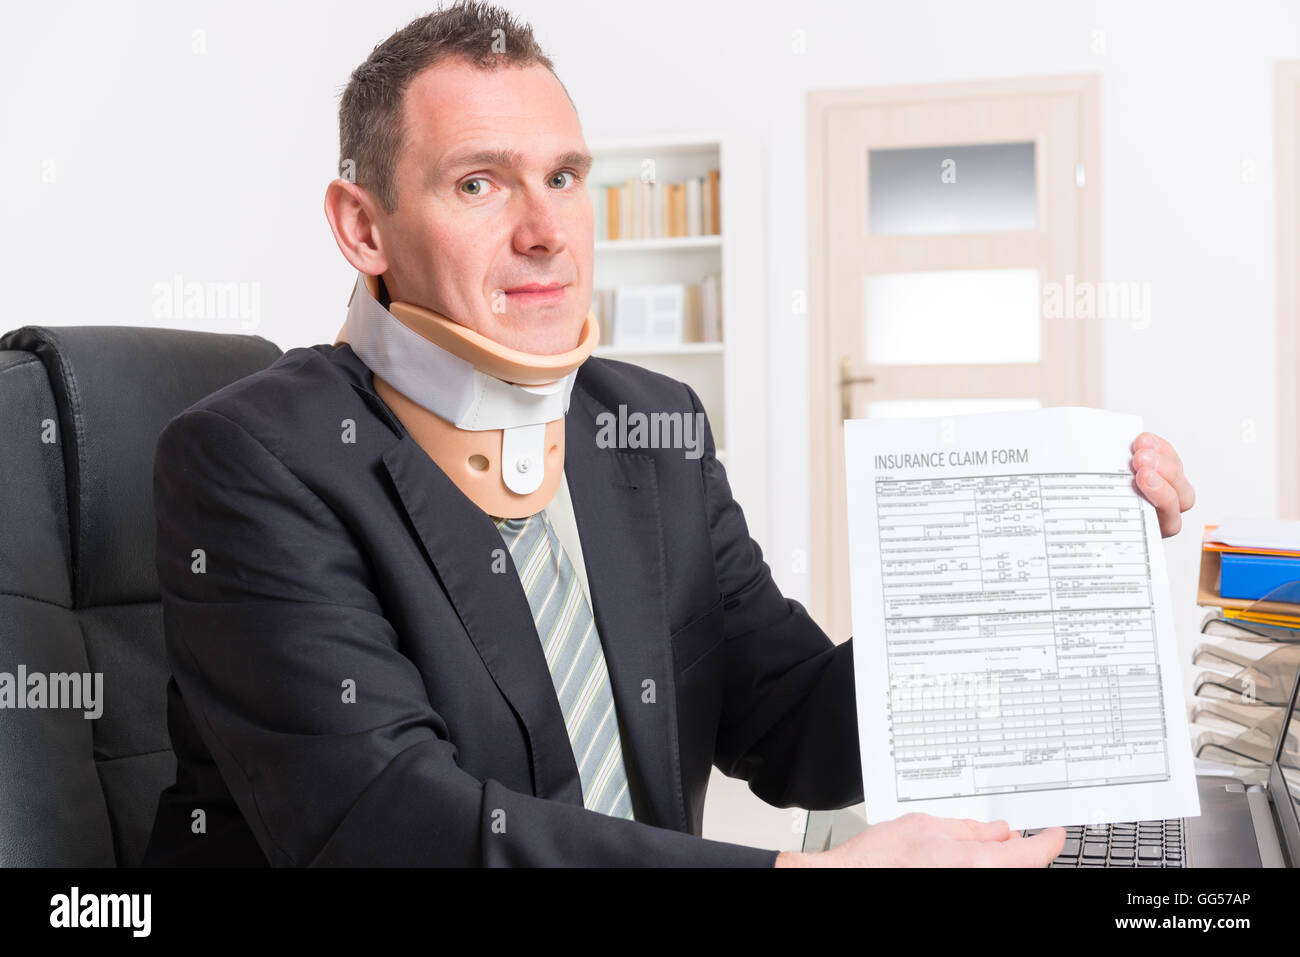 Empresario en el trabajo llevar cuello ortopédico con insirance flaim formulario en manos Foto de stock